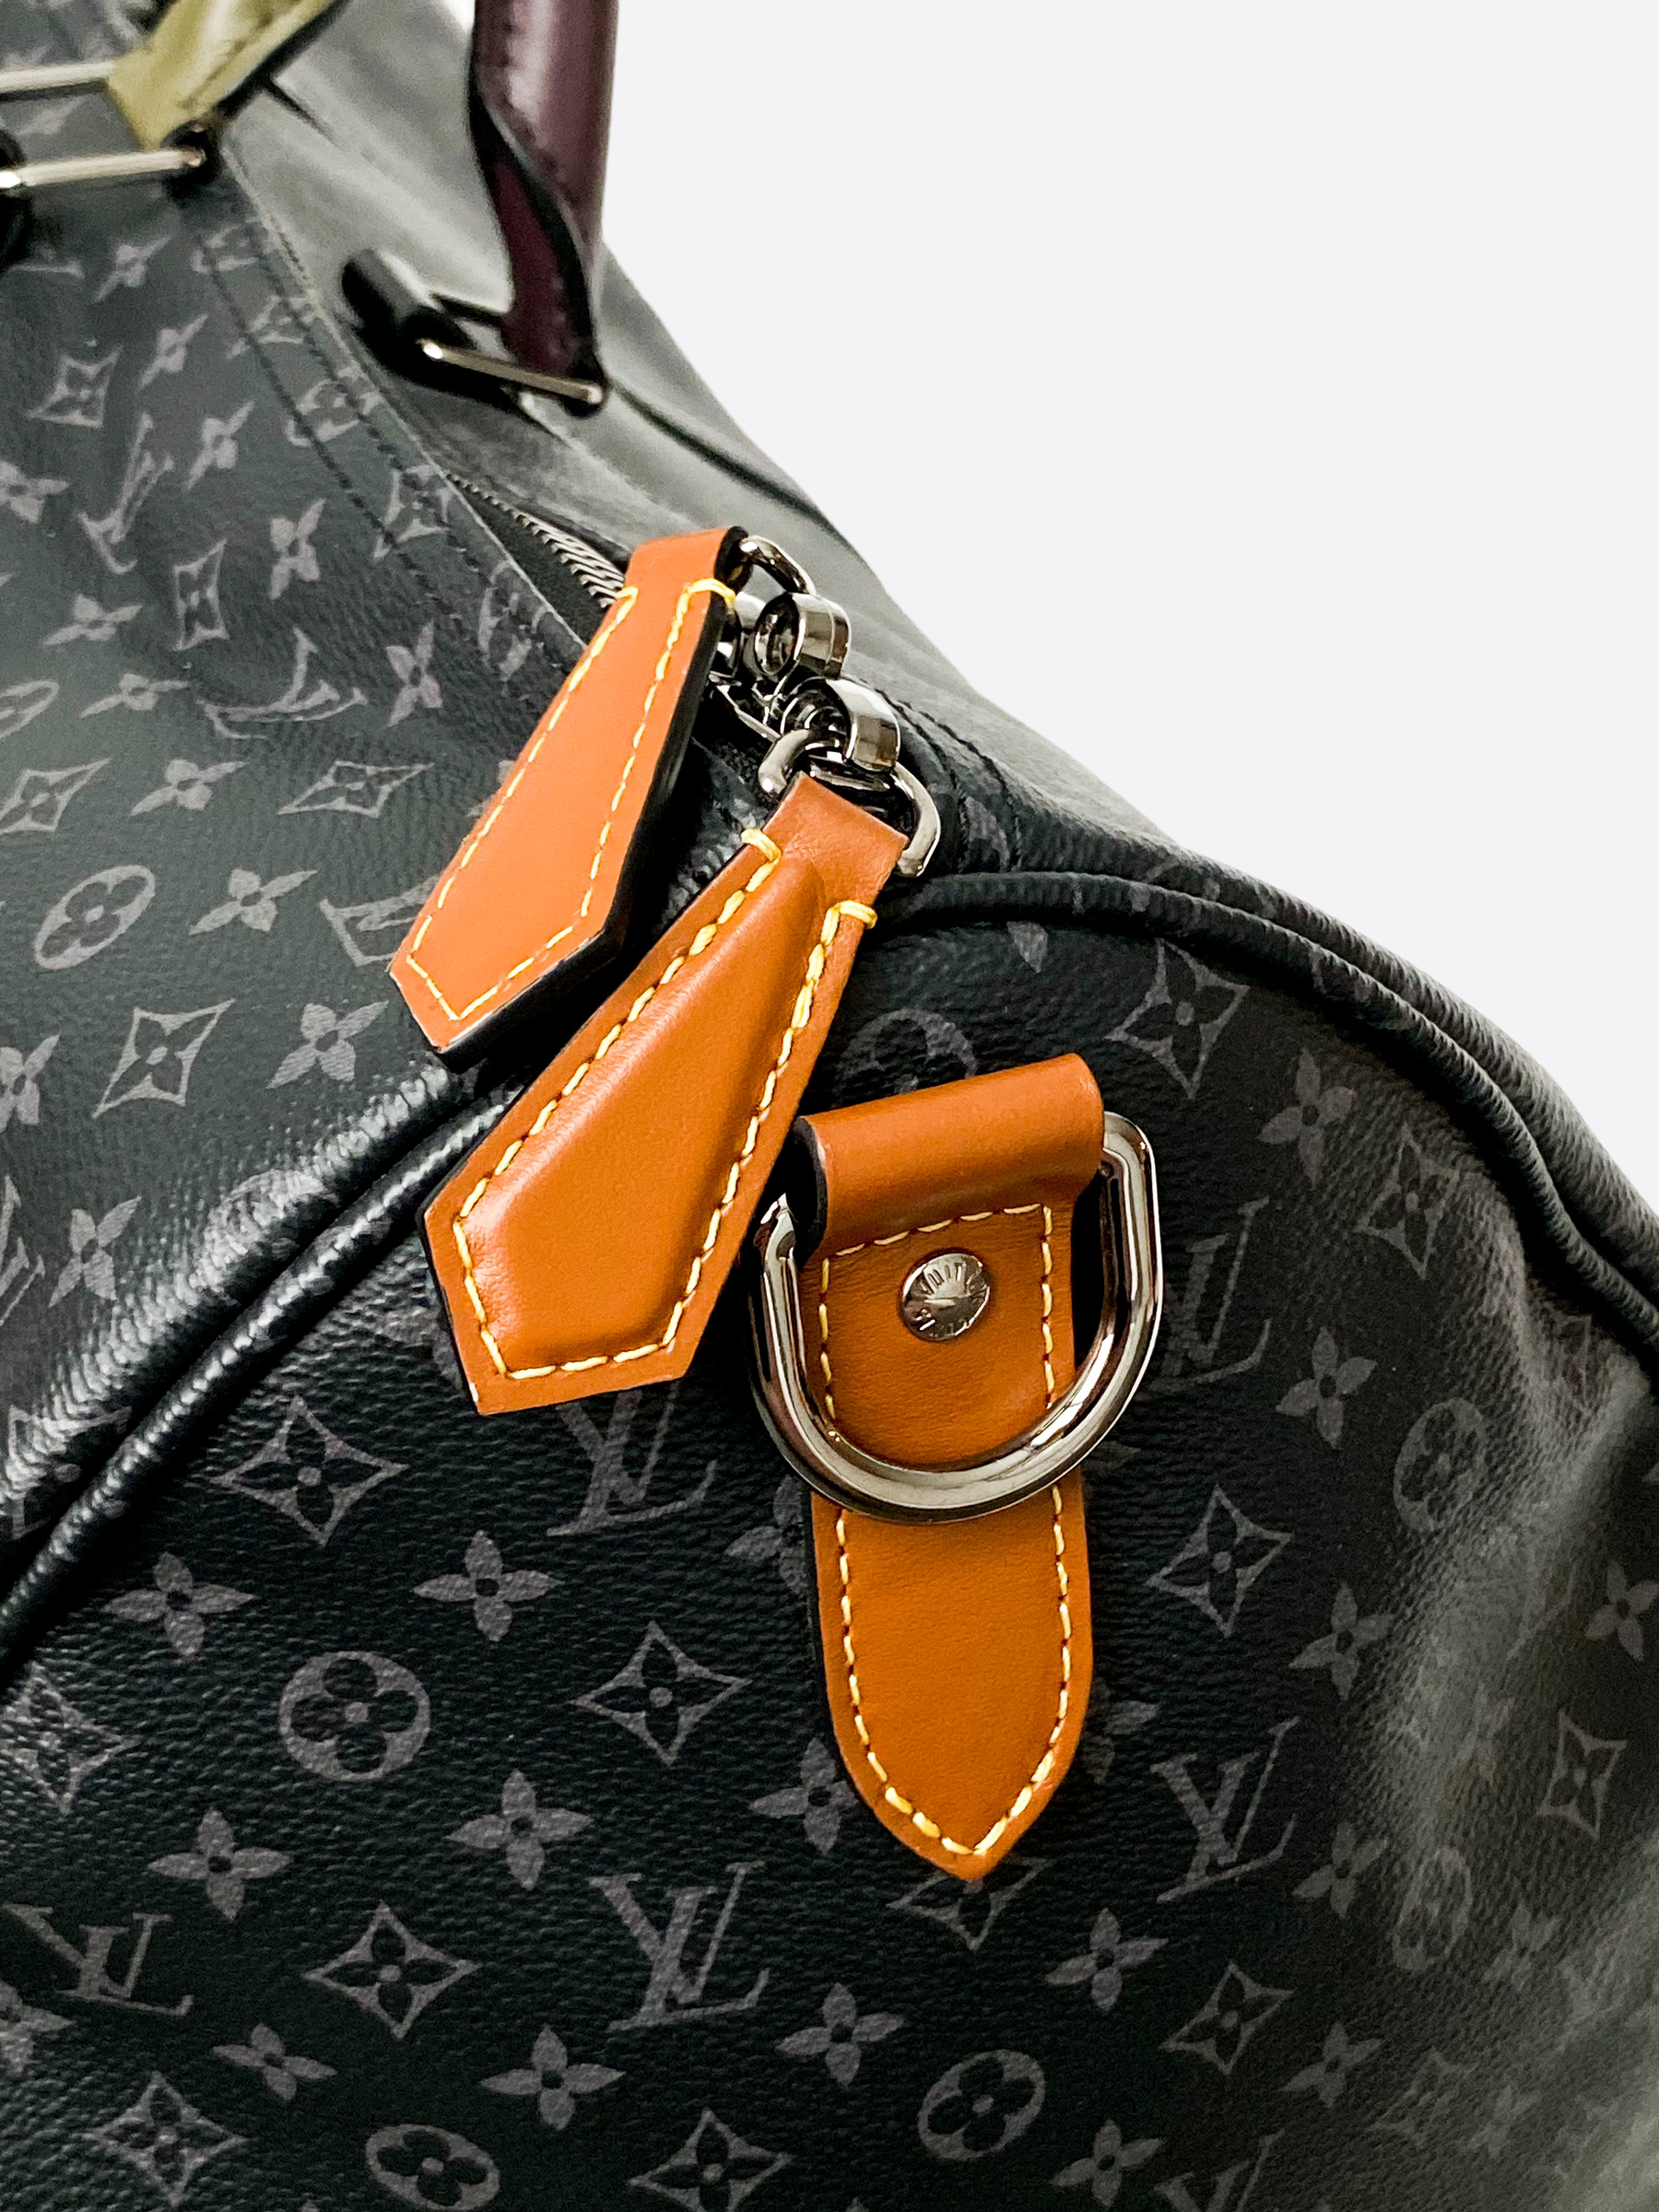 Louis Vuitton Bandouliere Reverse Eclipse Monogram Duffle Bag 50